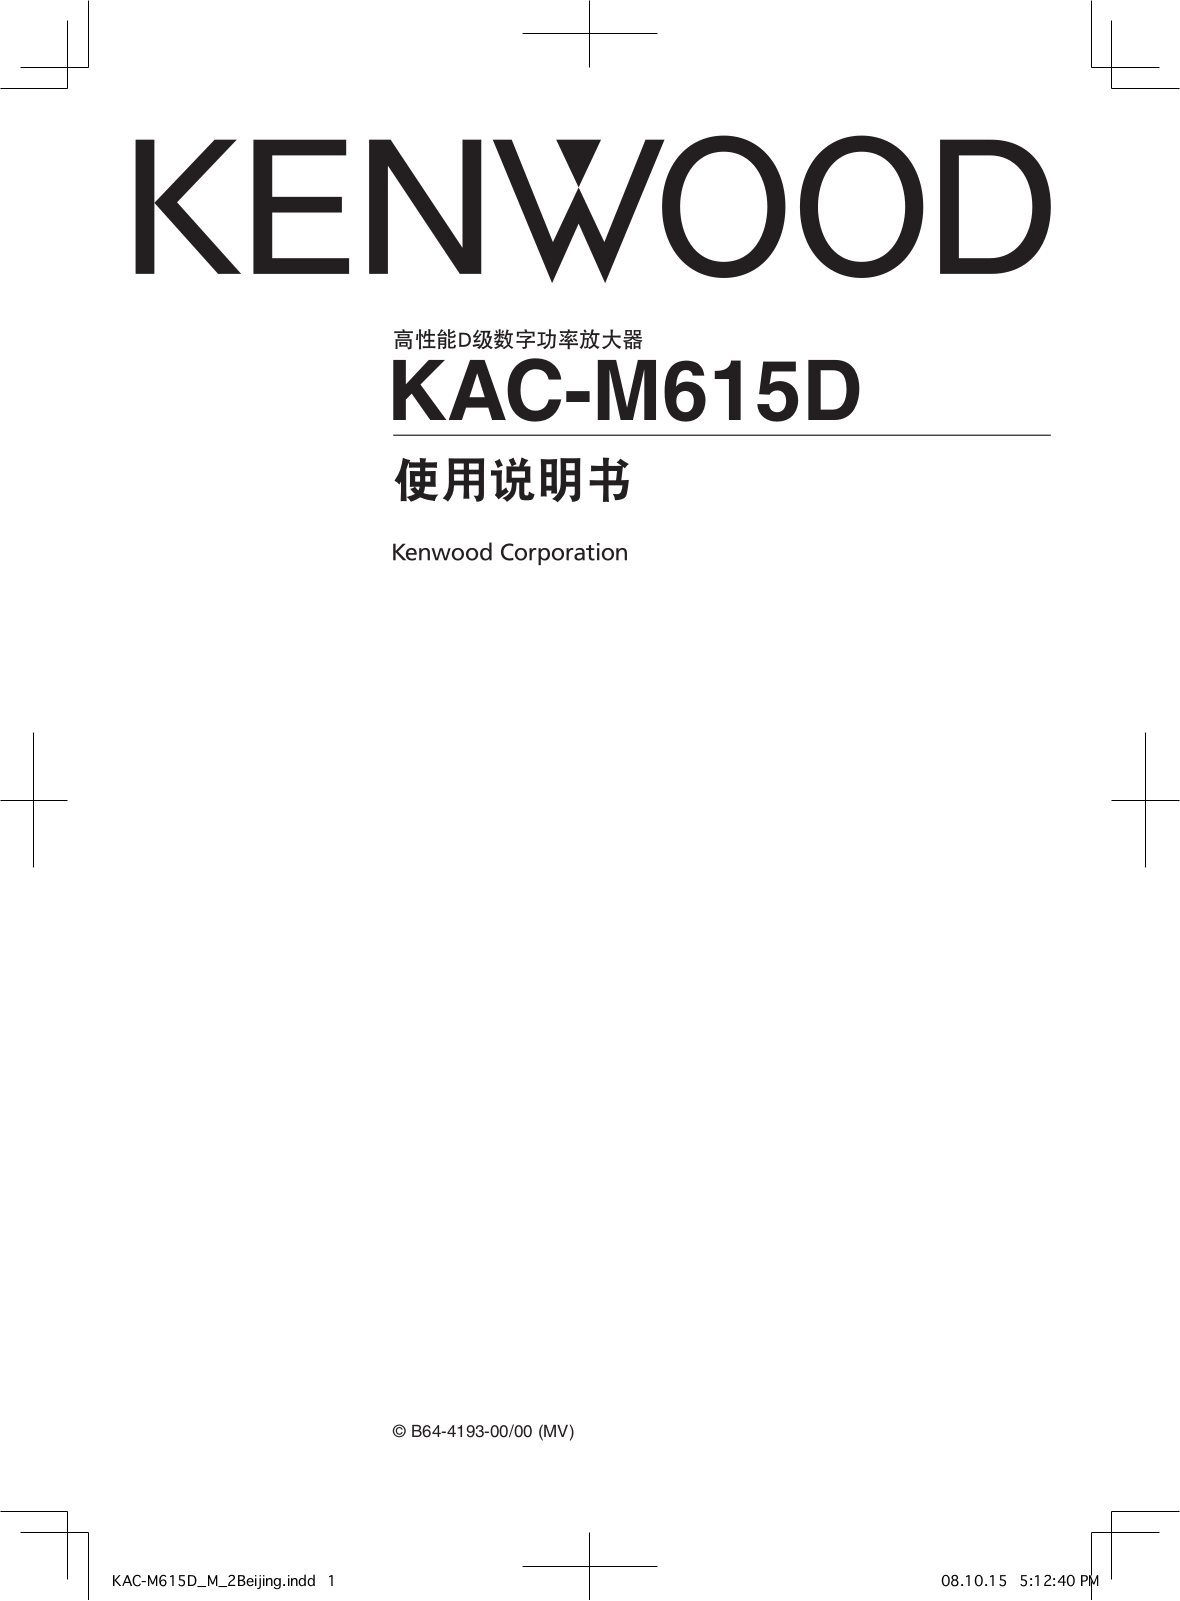 Kenwood KAC-M615D Manual